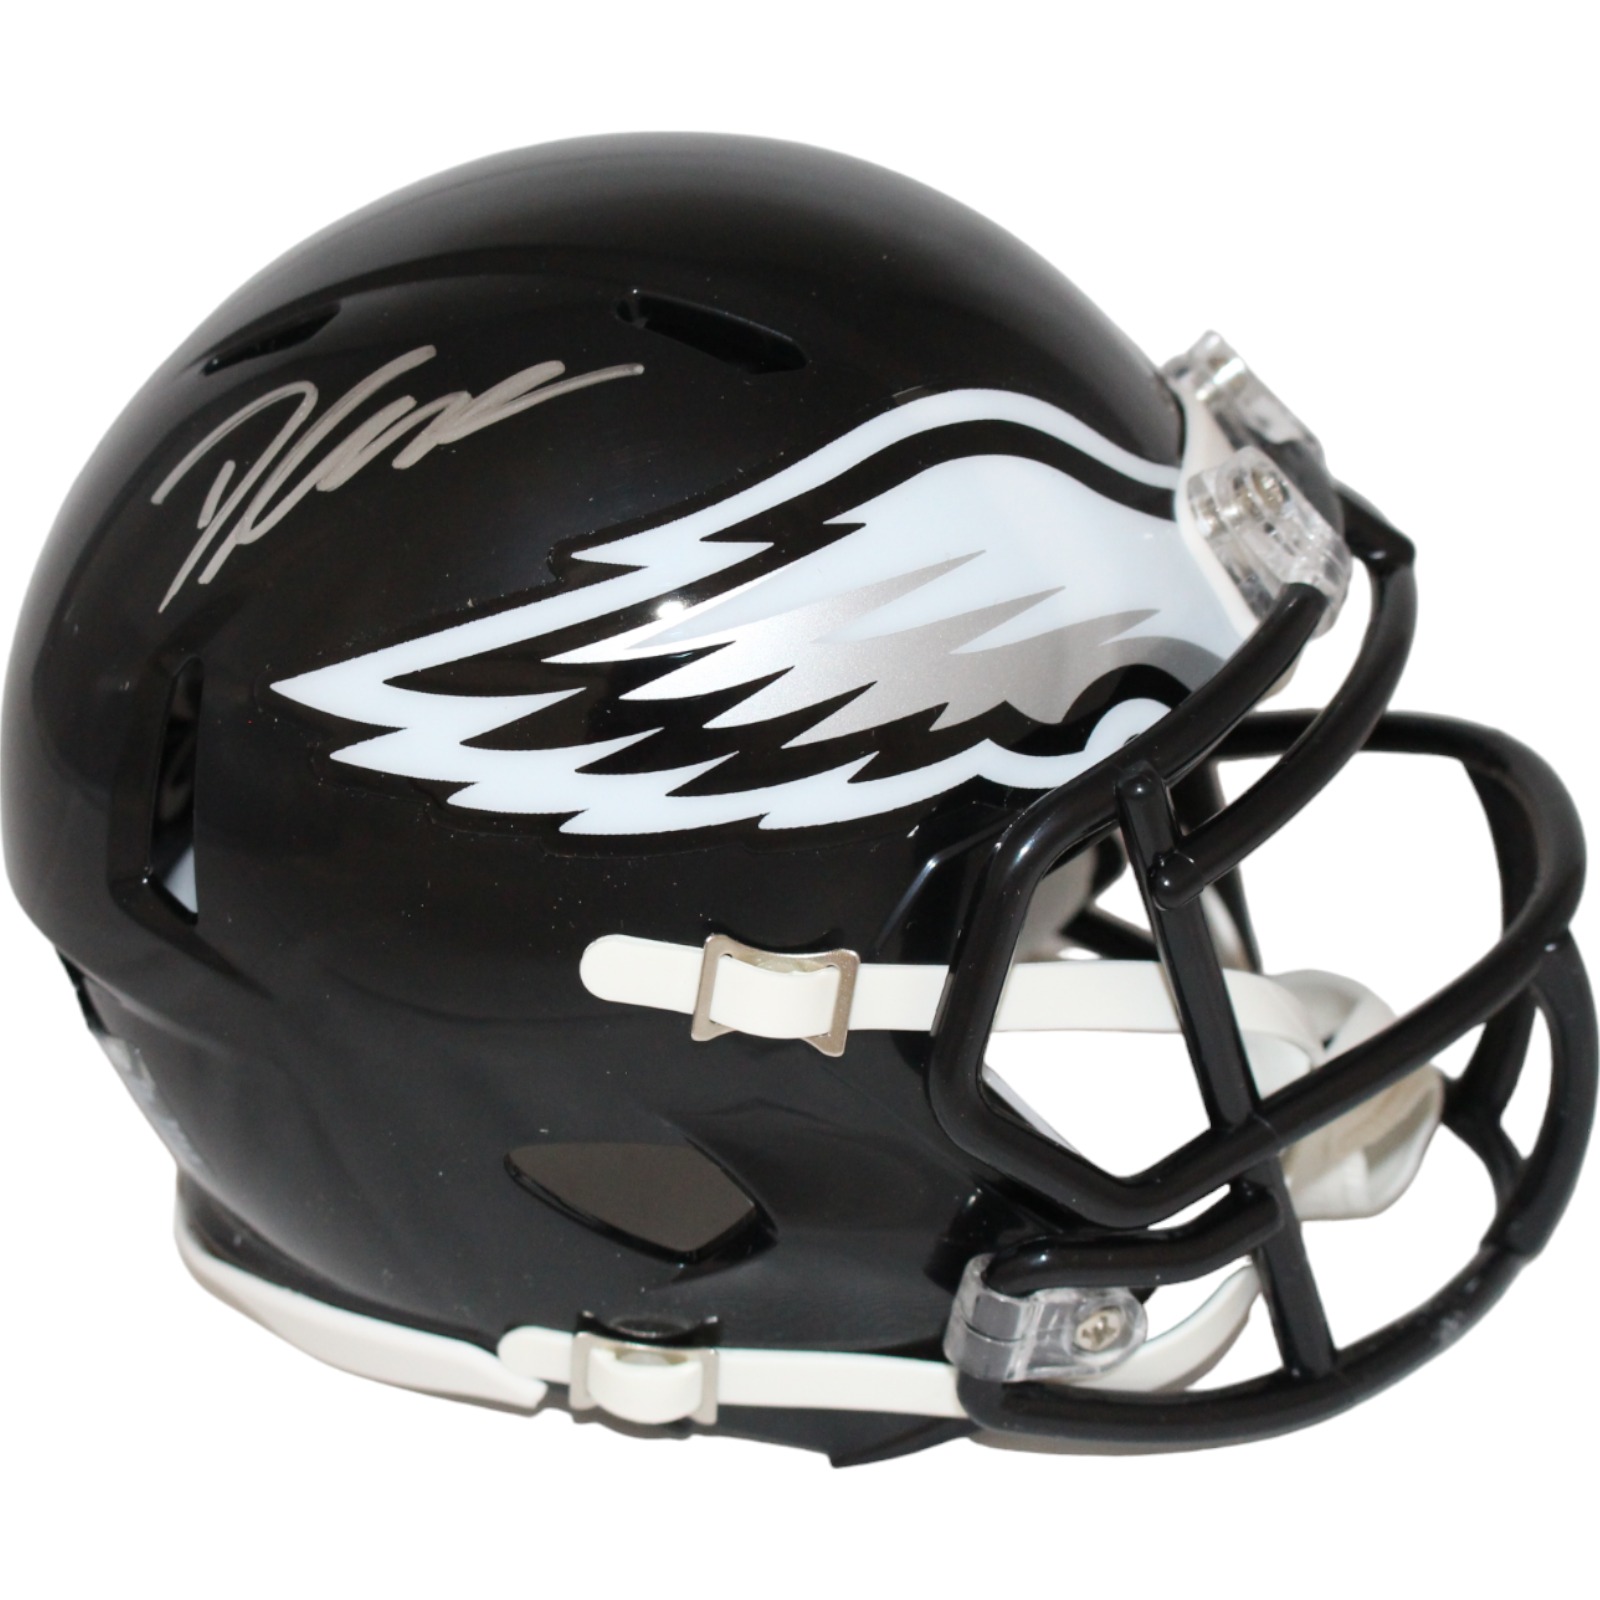 D'Andre Swift Signed Philadelphia Eagles 22 Alt Mini Helmet Beckett